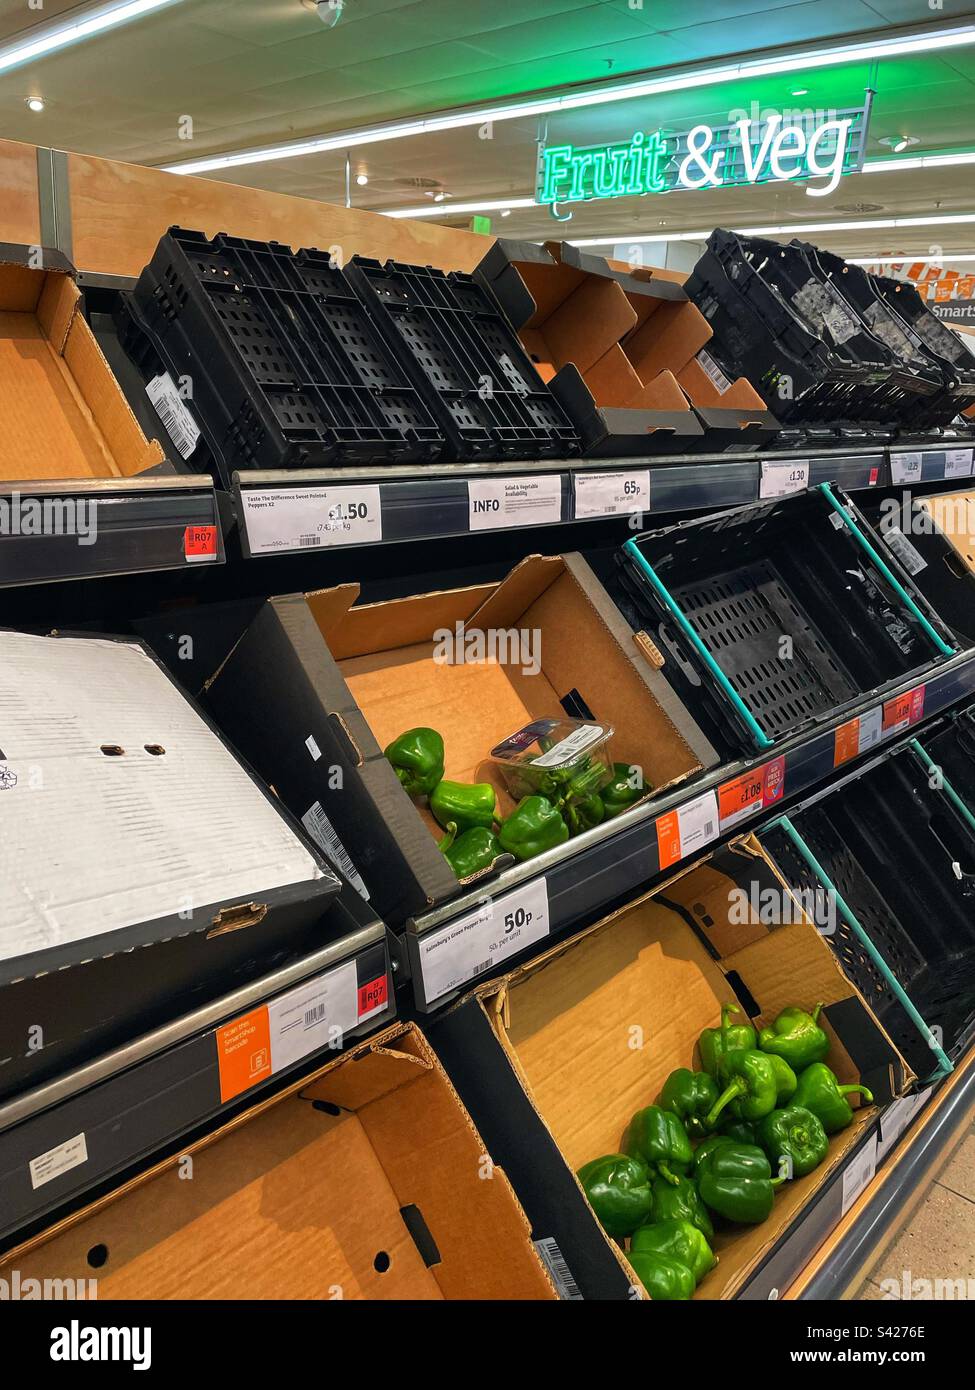 Ist es Brexit? Oder ein Versagen der Lebensmittelversorgungskette? Mangel an frischen Produkten in Supermärkten… Stockfoto